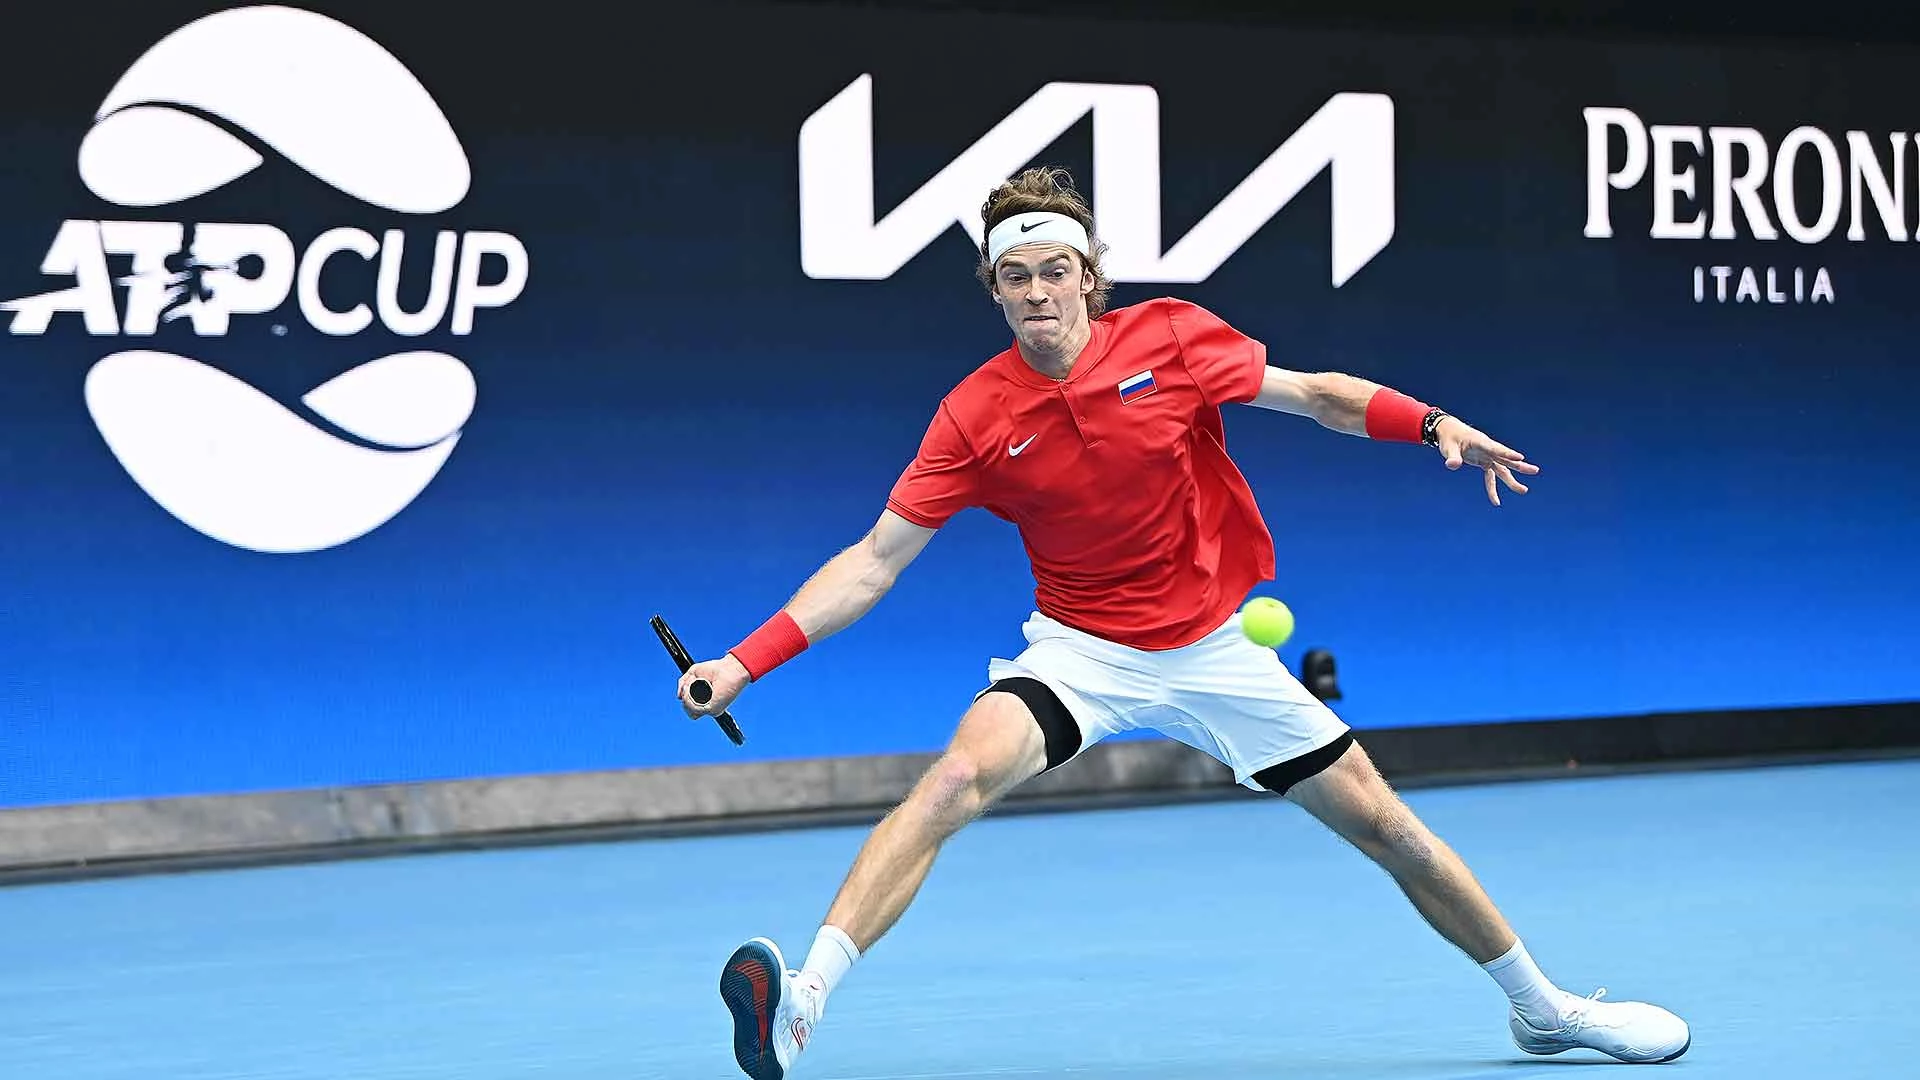 Андрей Рублев - Йосихито Нисиока. Прогноз на матч ATP Cup (3 февраля 2021 года)